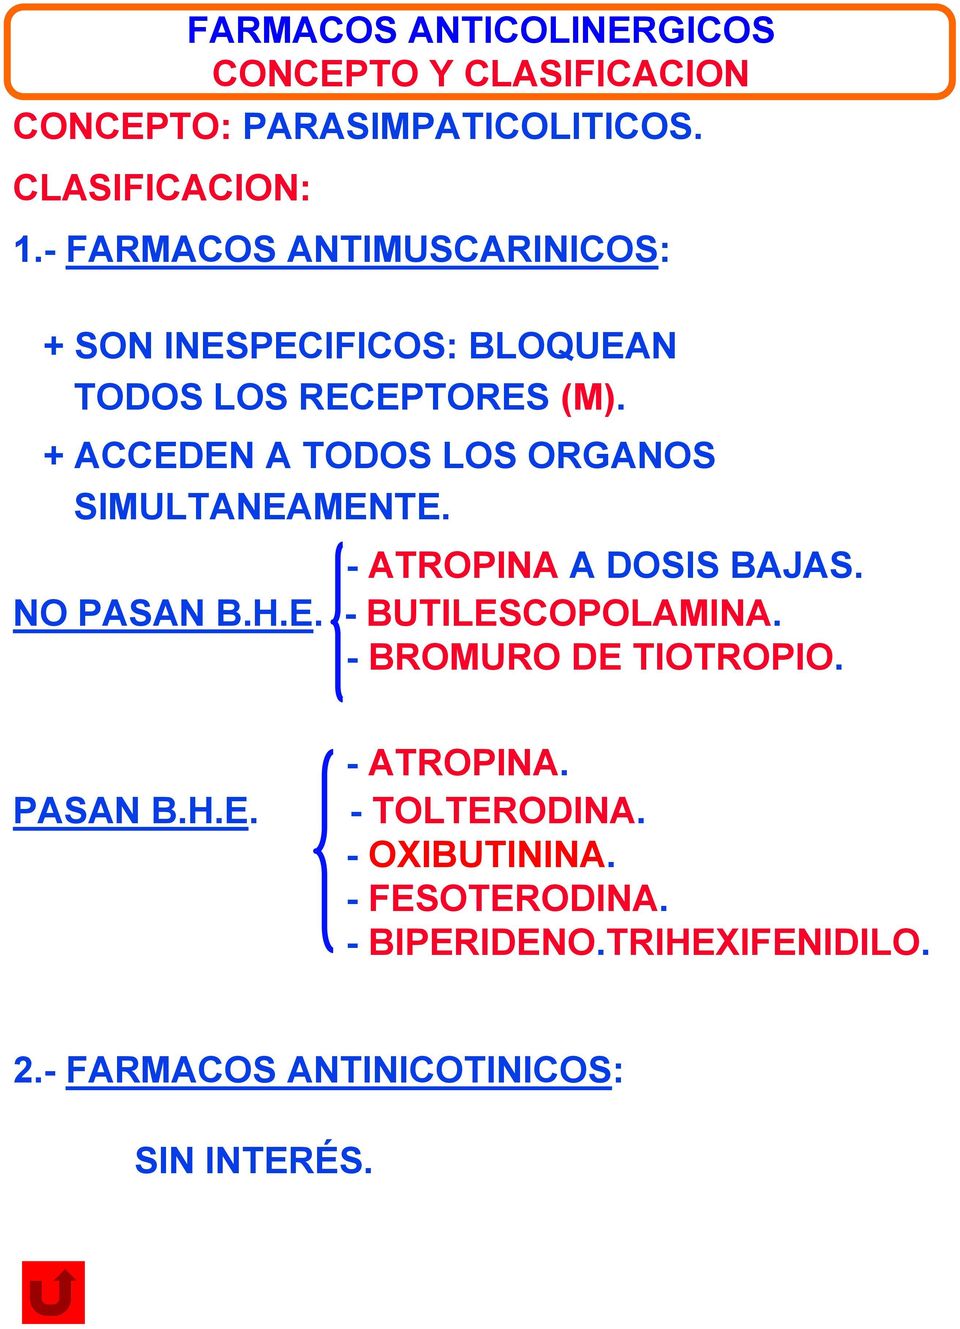 medicamentos colinergicos y anticolinergicos pdf